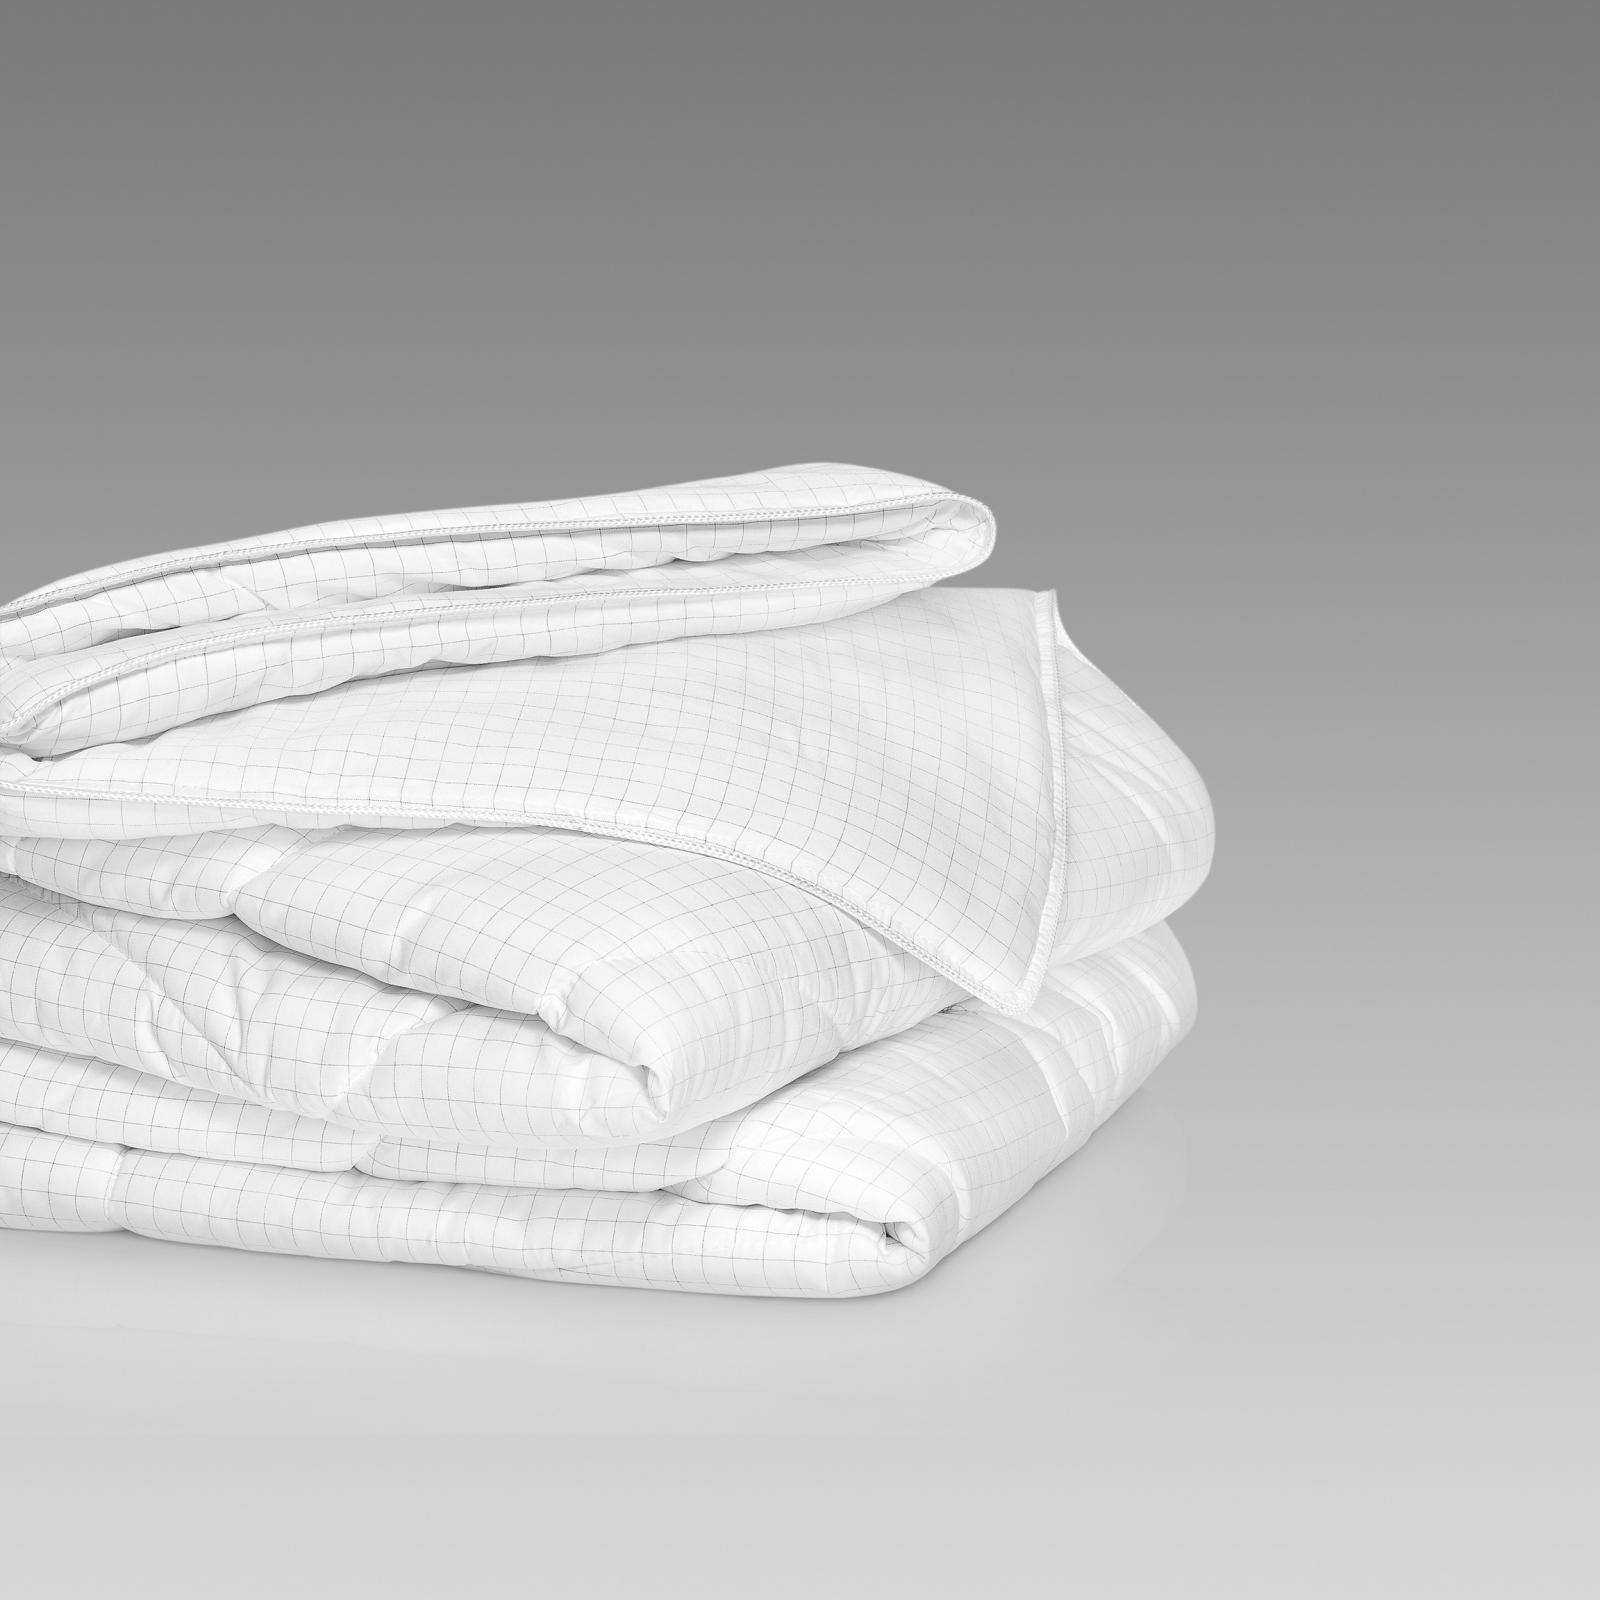 Одеяло Либра Togas 140х200, размер 140х200 см - фото 8